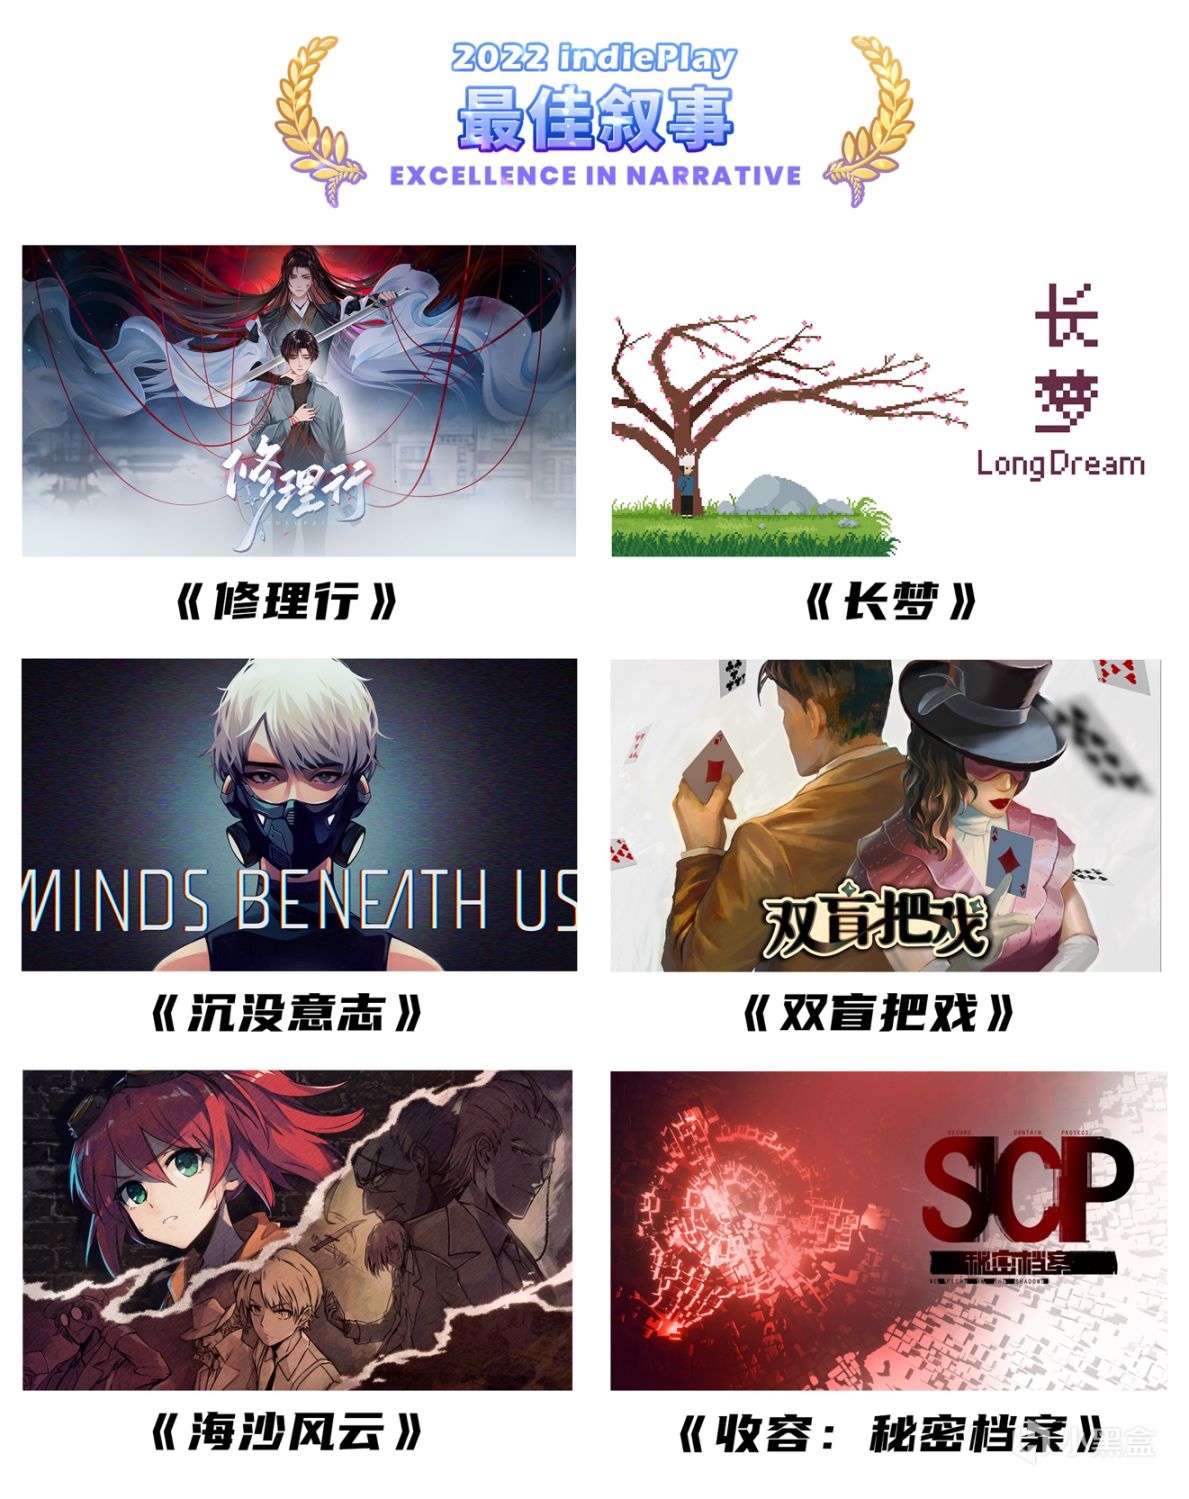 【PC游戏】2022indiePlay中国独立游戏大赛入围名单公布！11月13日公布各奖项最终归属-第9张